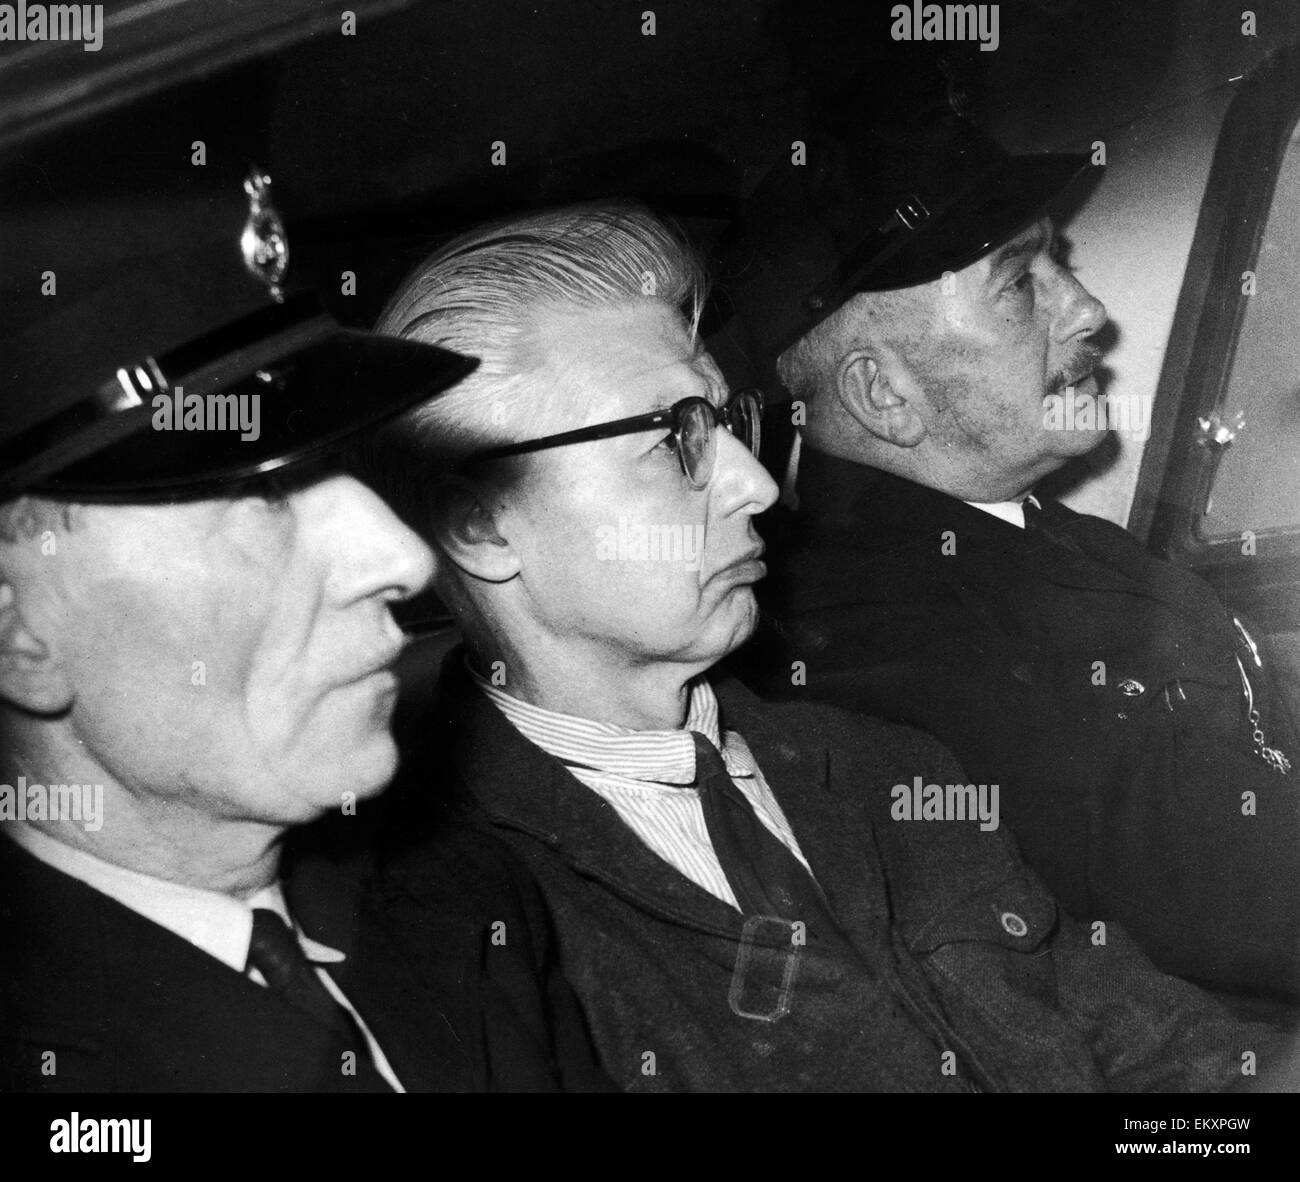 Russischer Spion Peter Kroger übertragen von Wakefield Gefängnis, Parkhurst nach einer Sicherheit zu erschrecken, nachdem George Blake aus Wermut scheuert entgangen. 26. Oktober 1966. Stockfoto